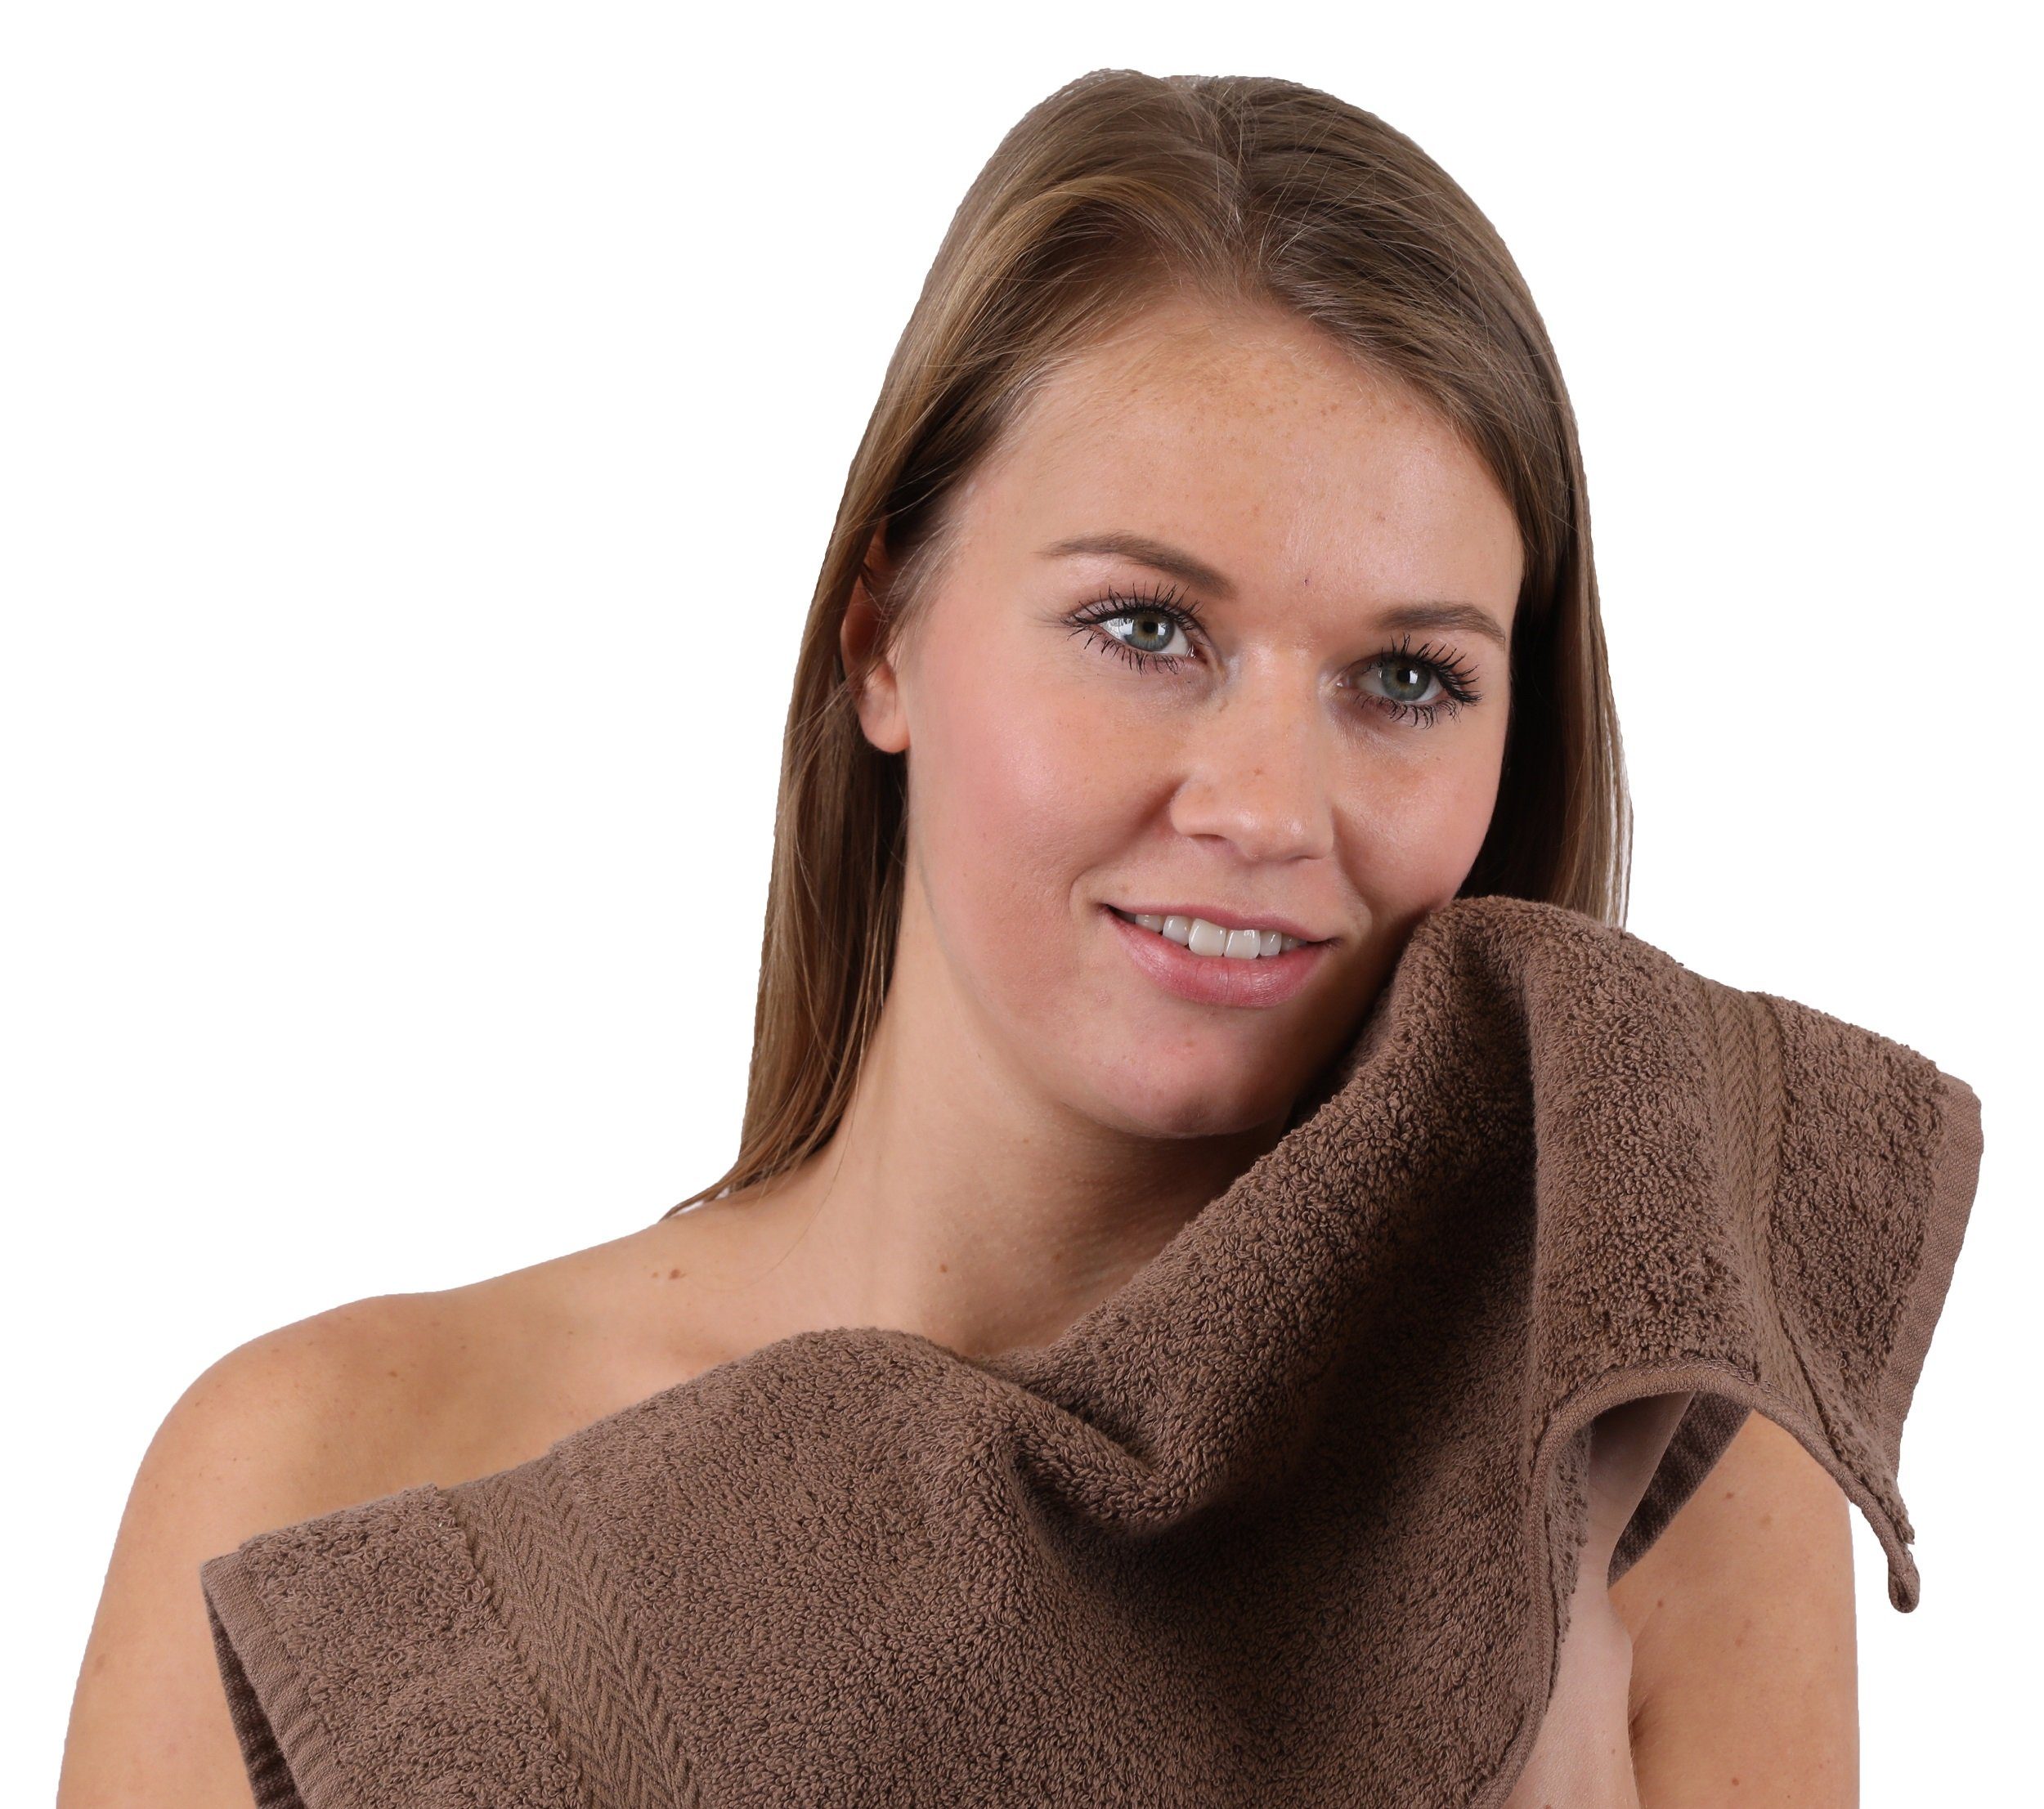 silbergrau, Handtuch-Set und Classic Baumwolle Handtuch Farbe Set Betz 10-TLG. nussbraun 100%